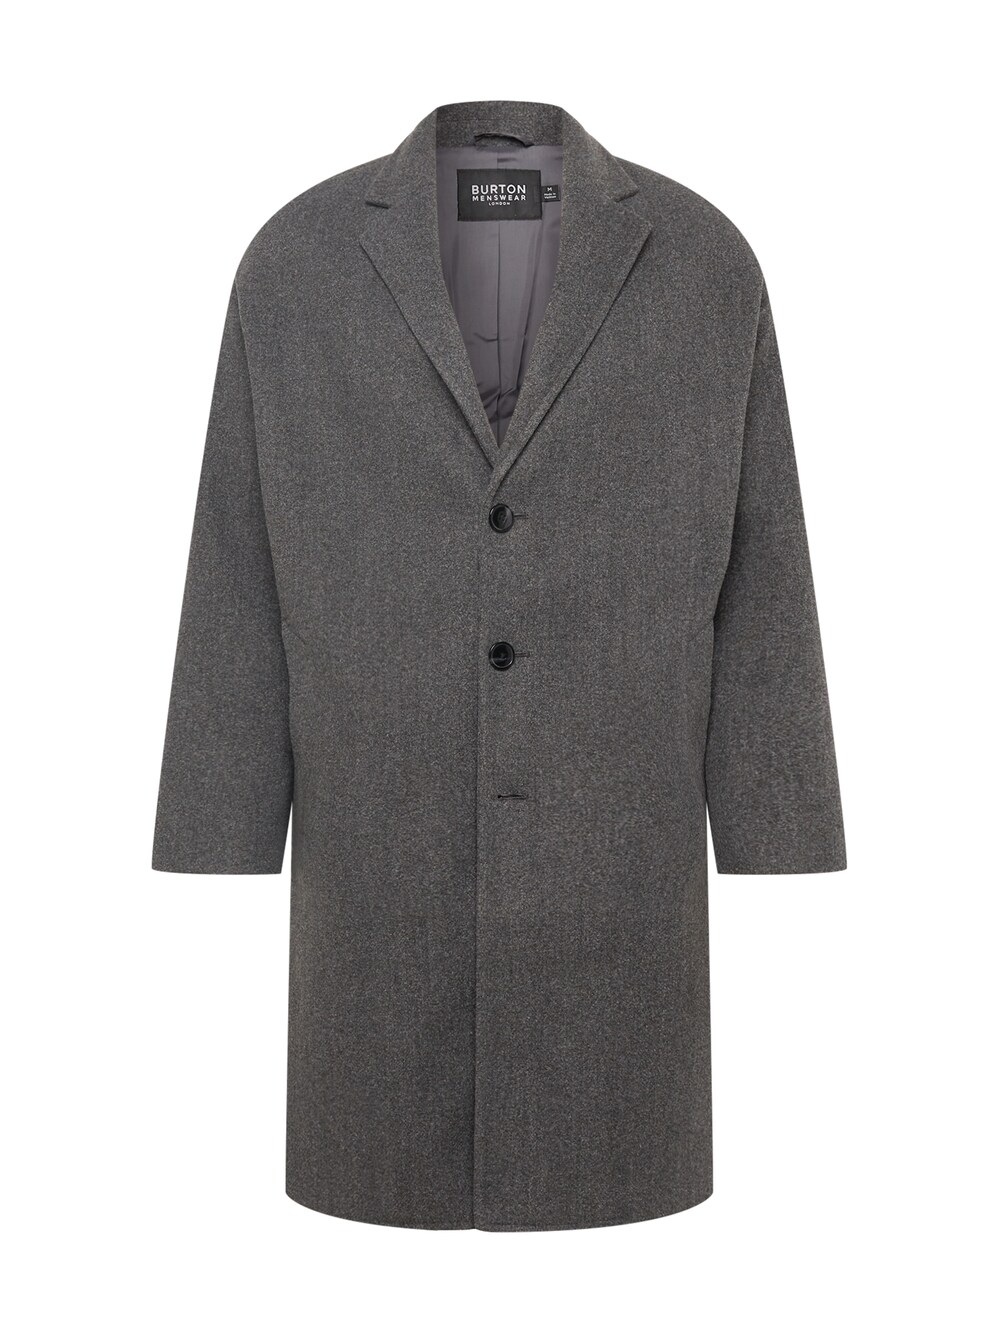 Межсезонное пальто BURTON MENSWEAR LONDON, темно-серый